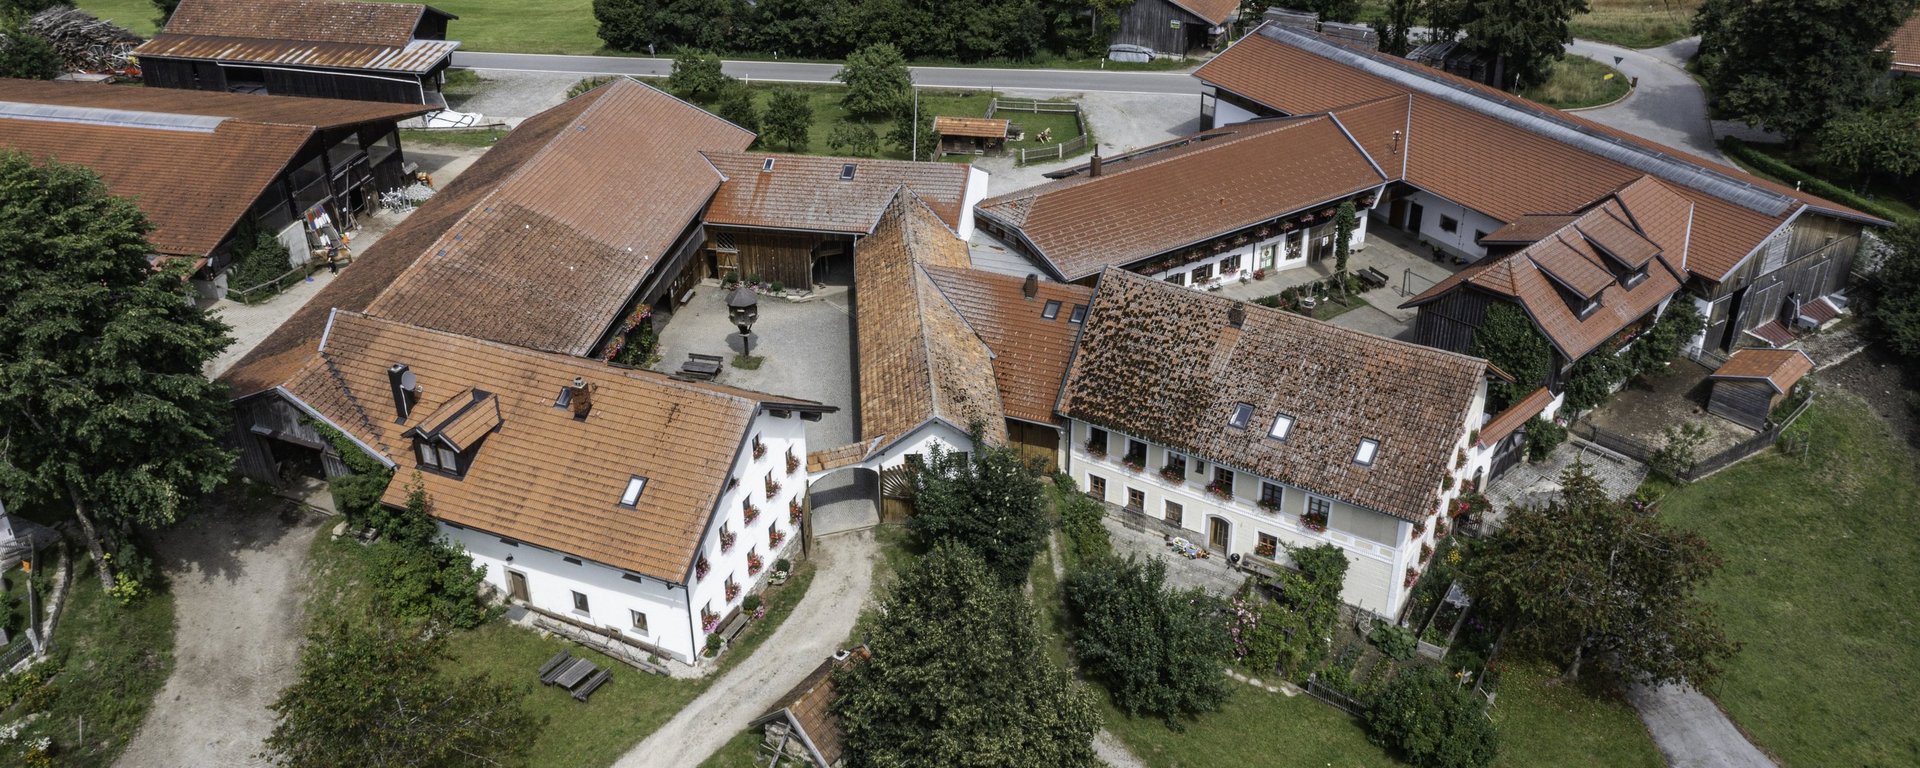 Ansicht von oben auf dem Ferienhof in Bayern